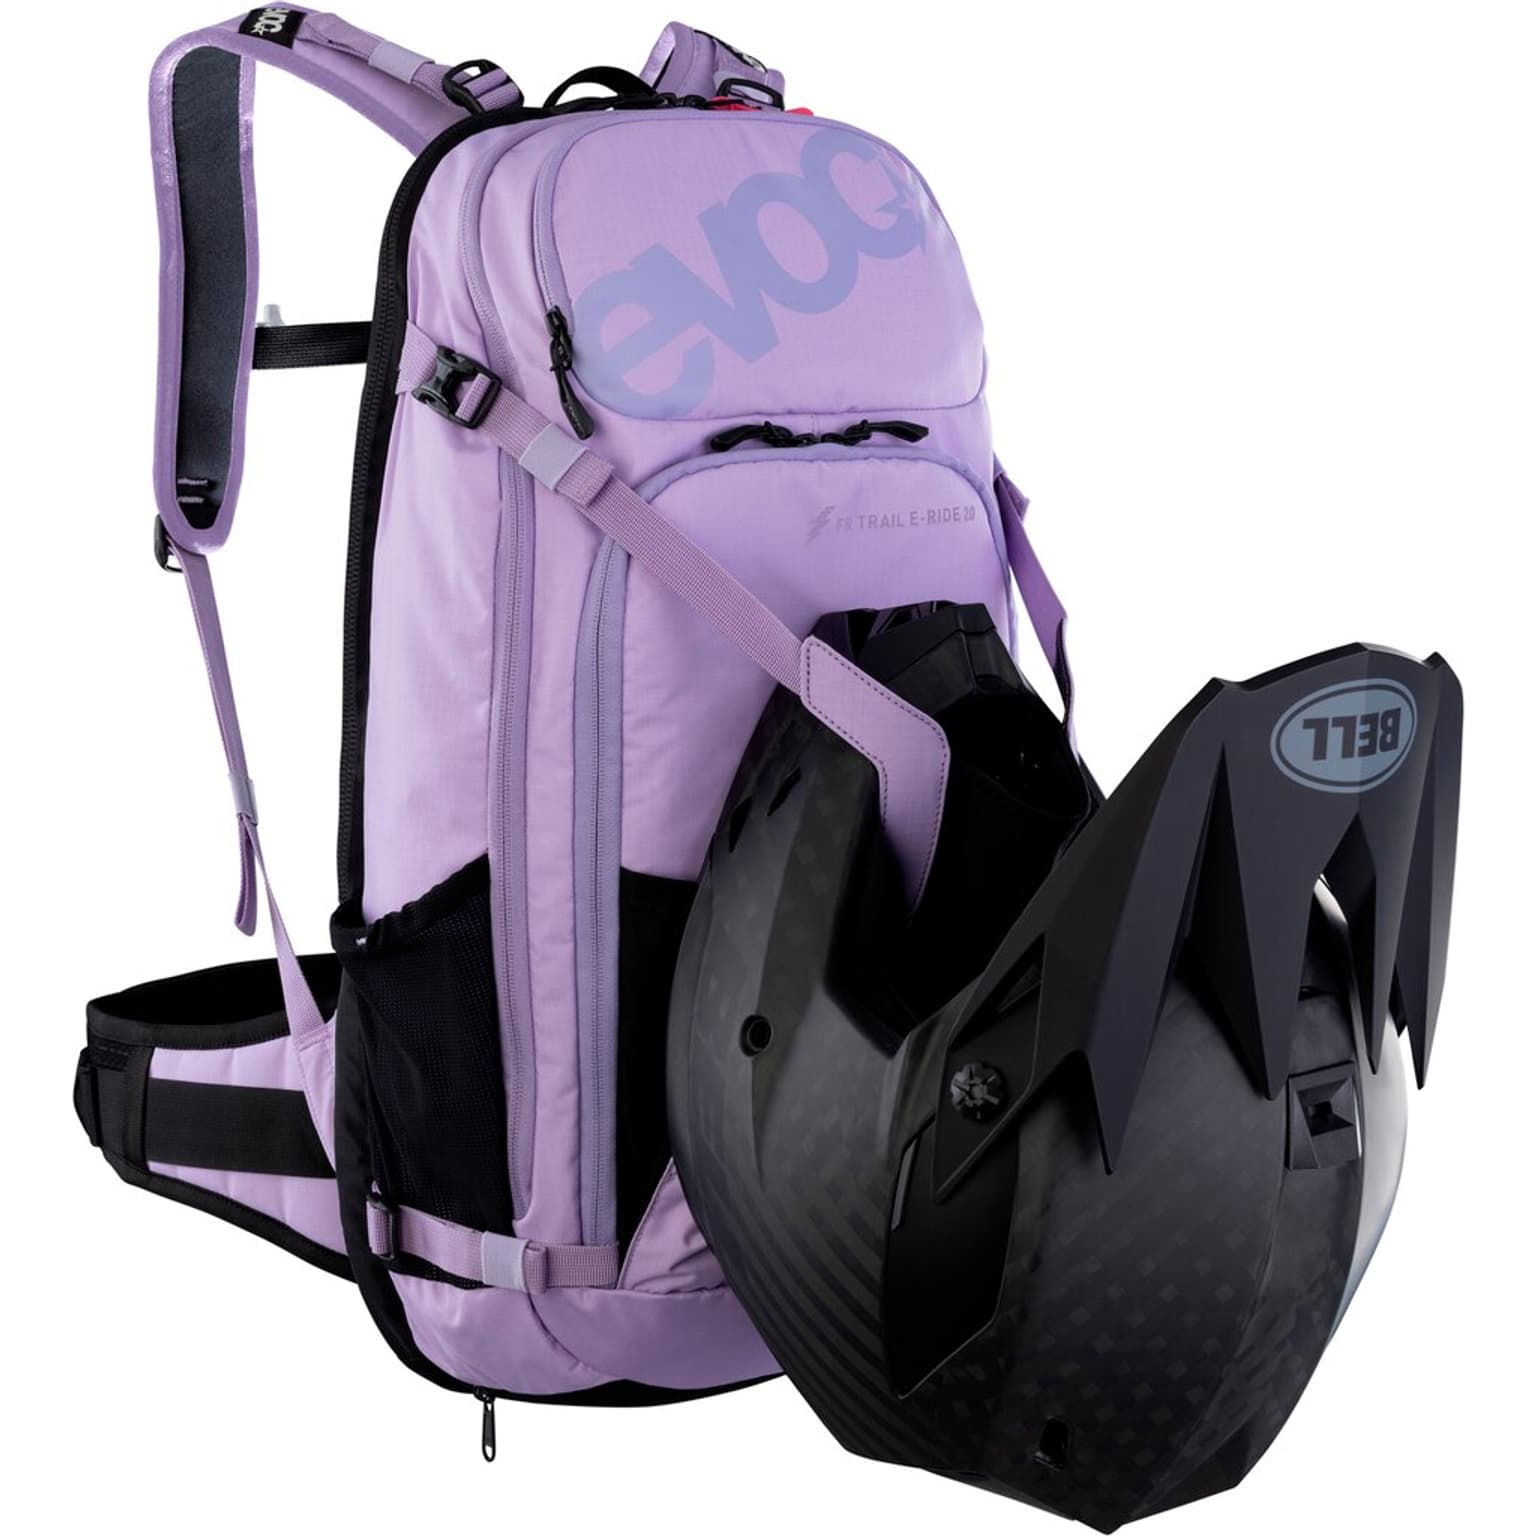 Evoc Evoc FR Trail E-Ride 20L Backpack Protektorenrucksack lilla-2 2